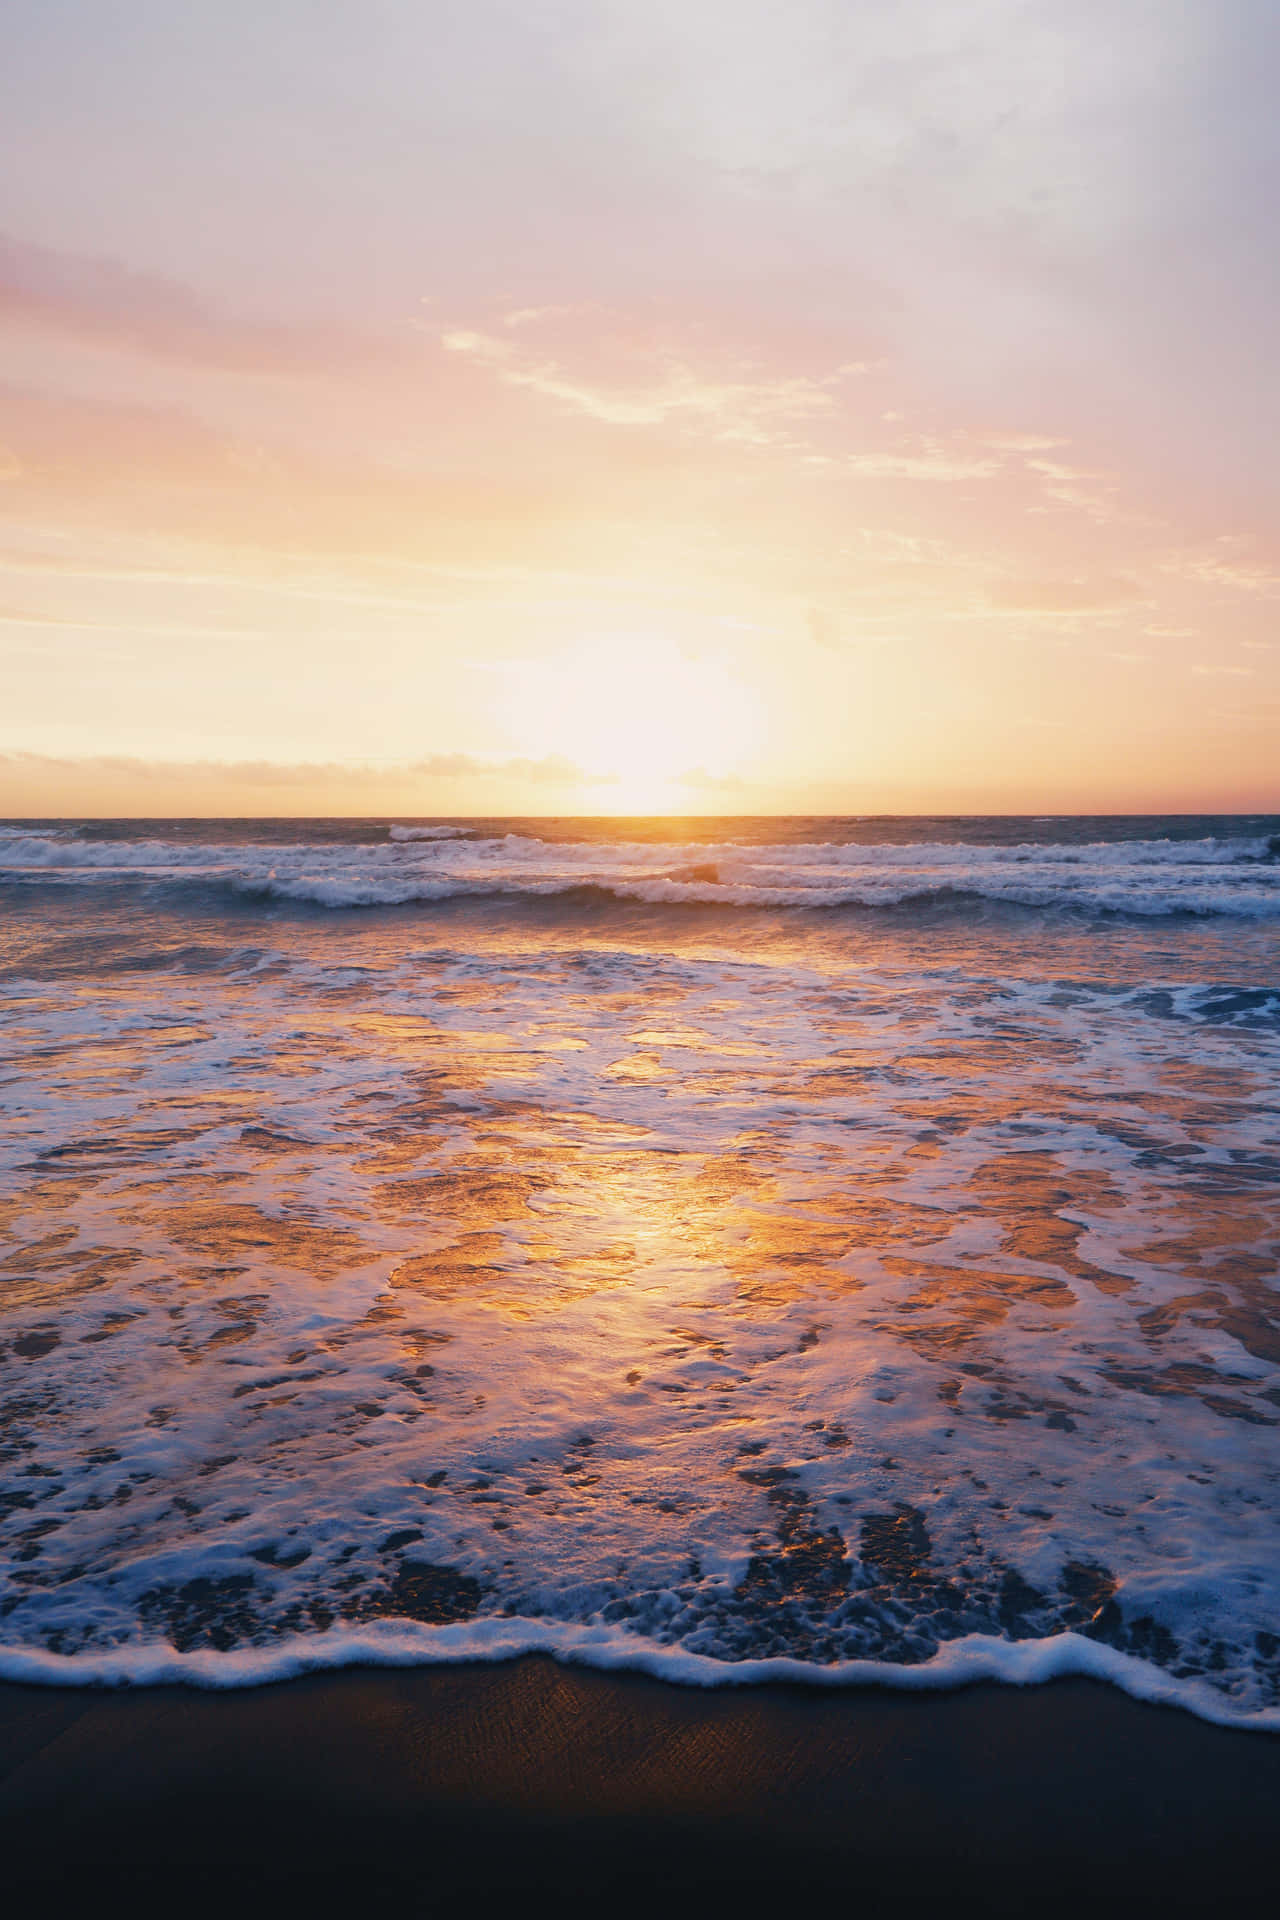 Tómateun Momento Y Disfruta De La Tranquila Puesta De Sol En La Playa Fondo de pantalla